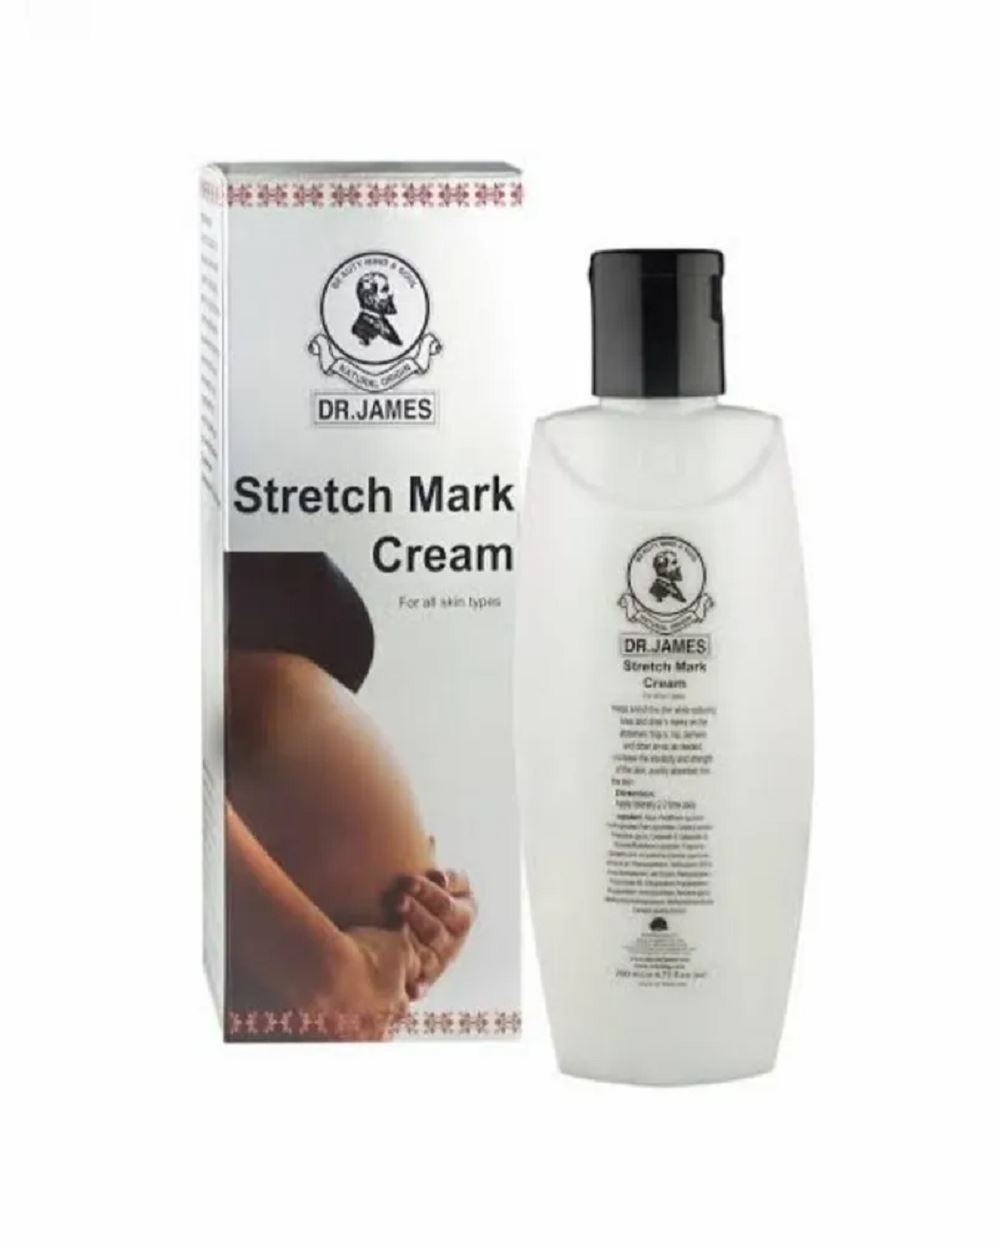 Dr James stretch mark cream